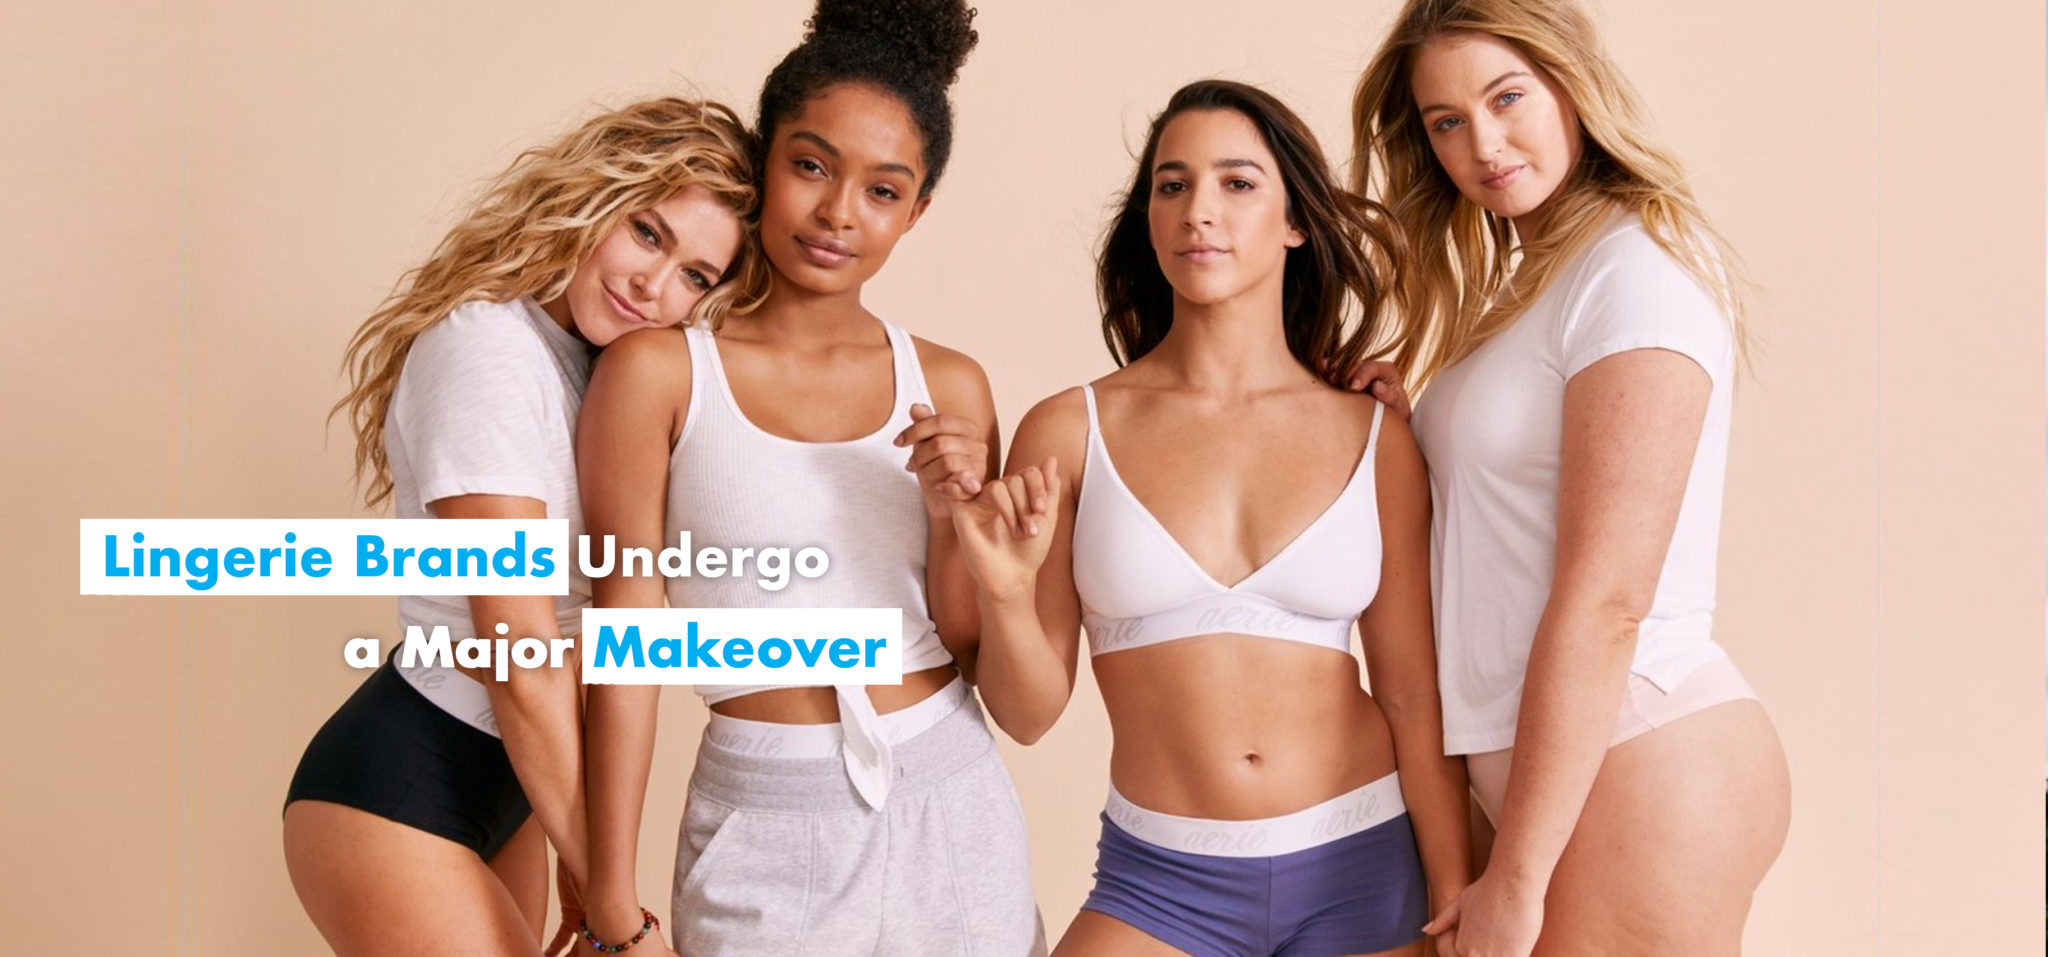 Lingerie Brands Undergo a Major Makeover: Branding Lessons from